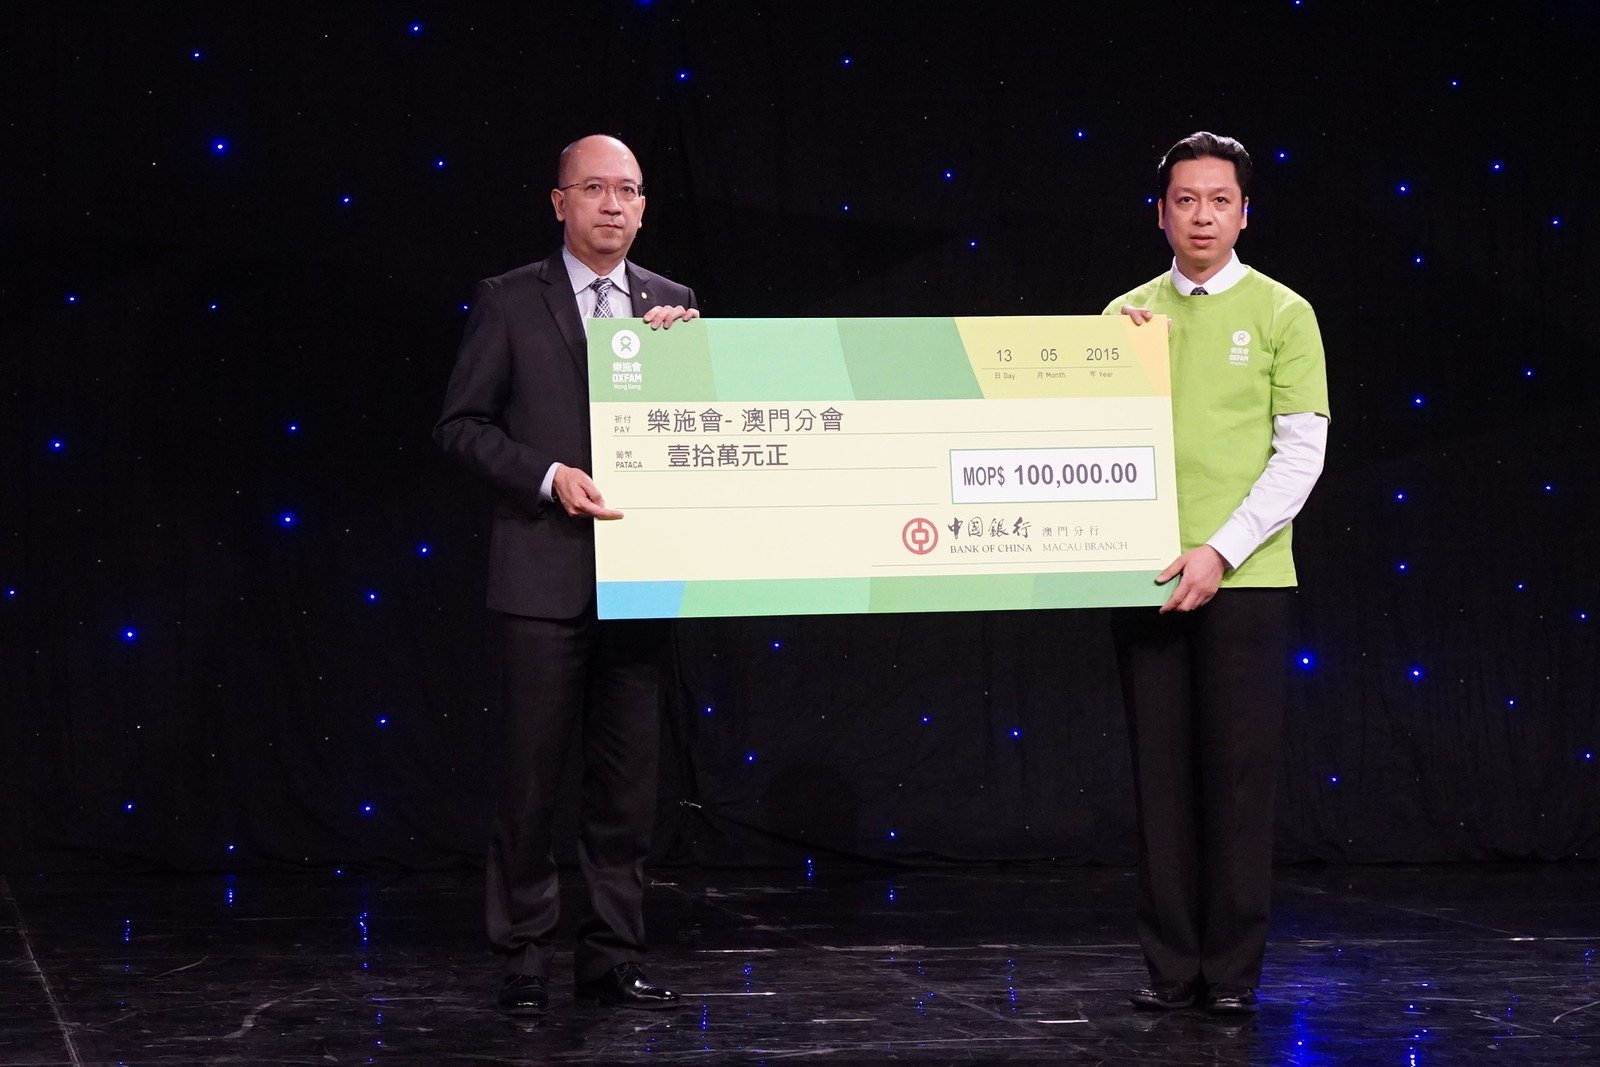 樂施會澳門分會顧問岑一峰(右)代表樂施會接受中國銀行的支票捐贈。